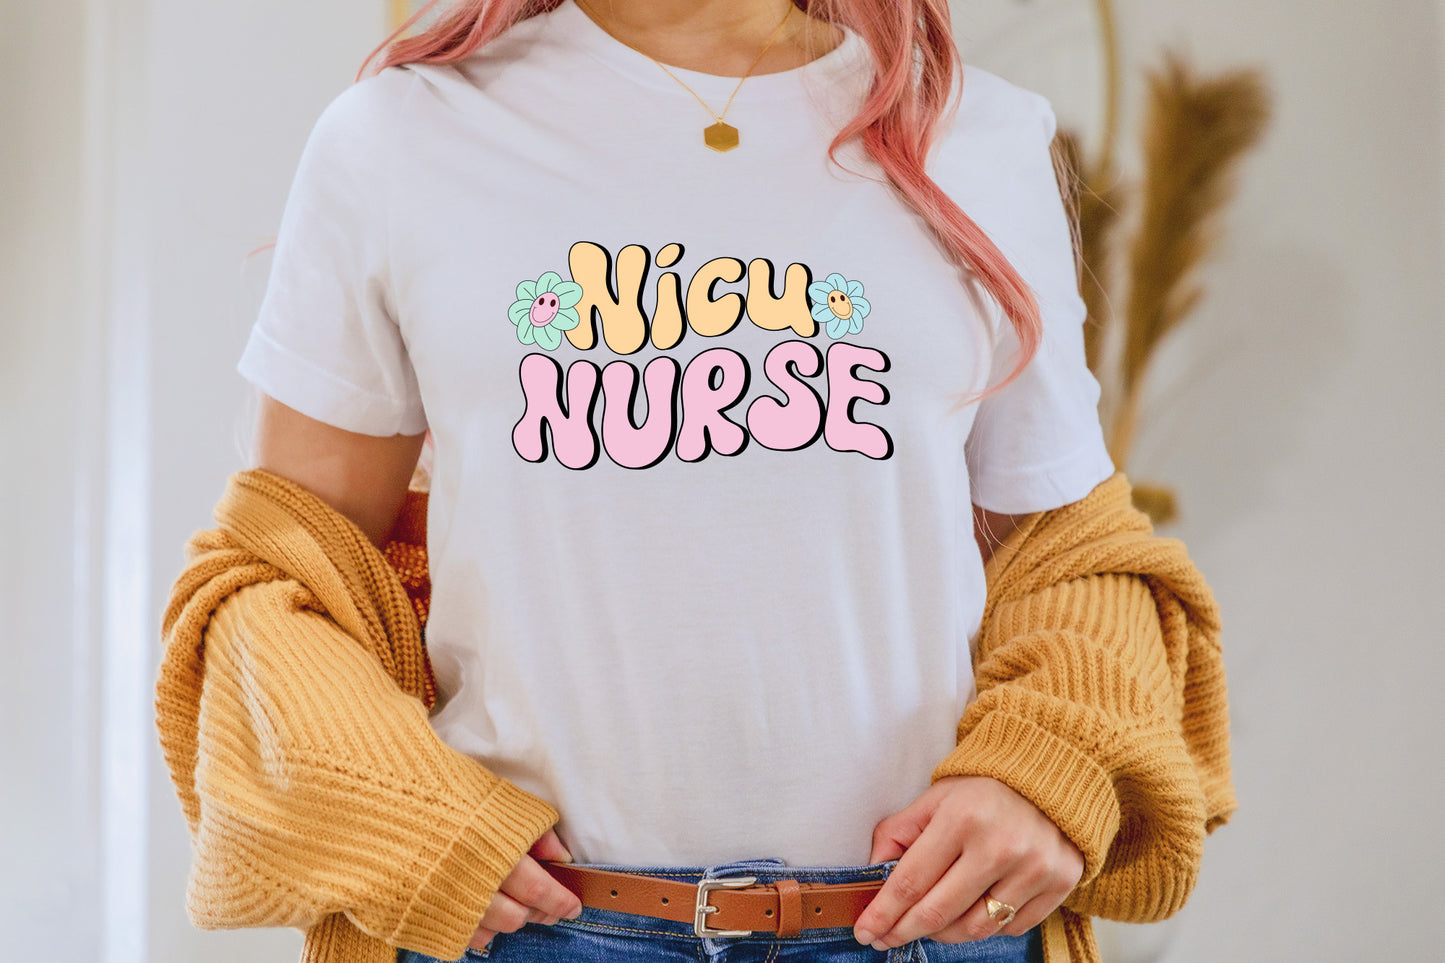 Retro Nurse Sublimation Design - Nicu Nurse PNG